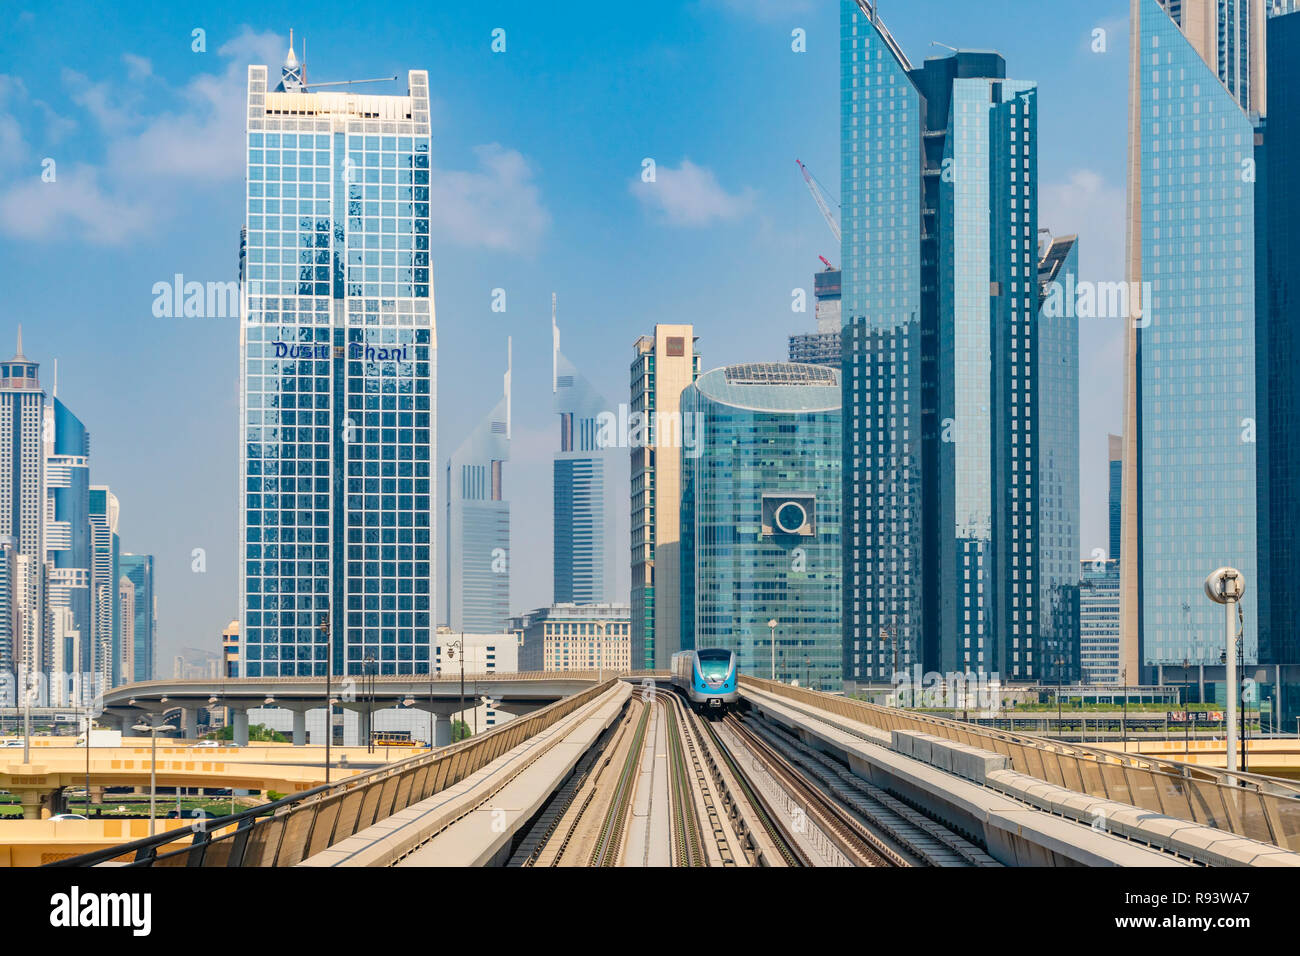 View of Metro train in downtown Dubai Stock Photo